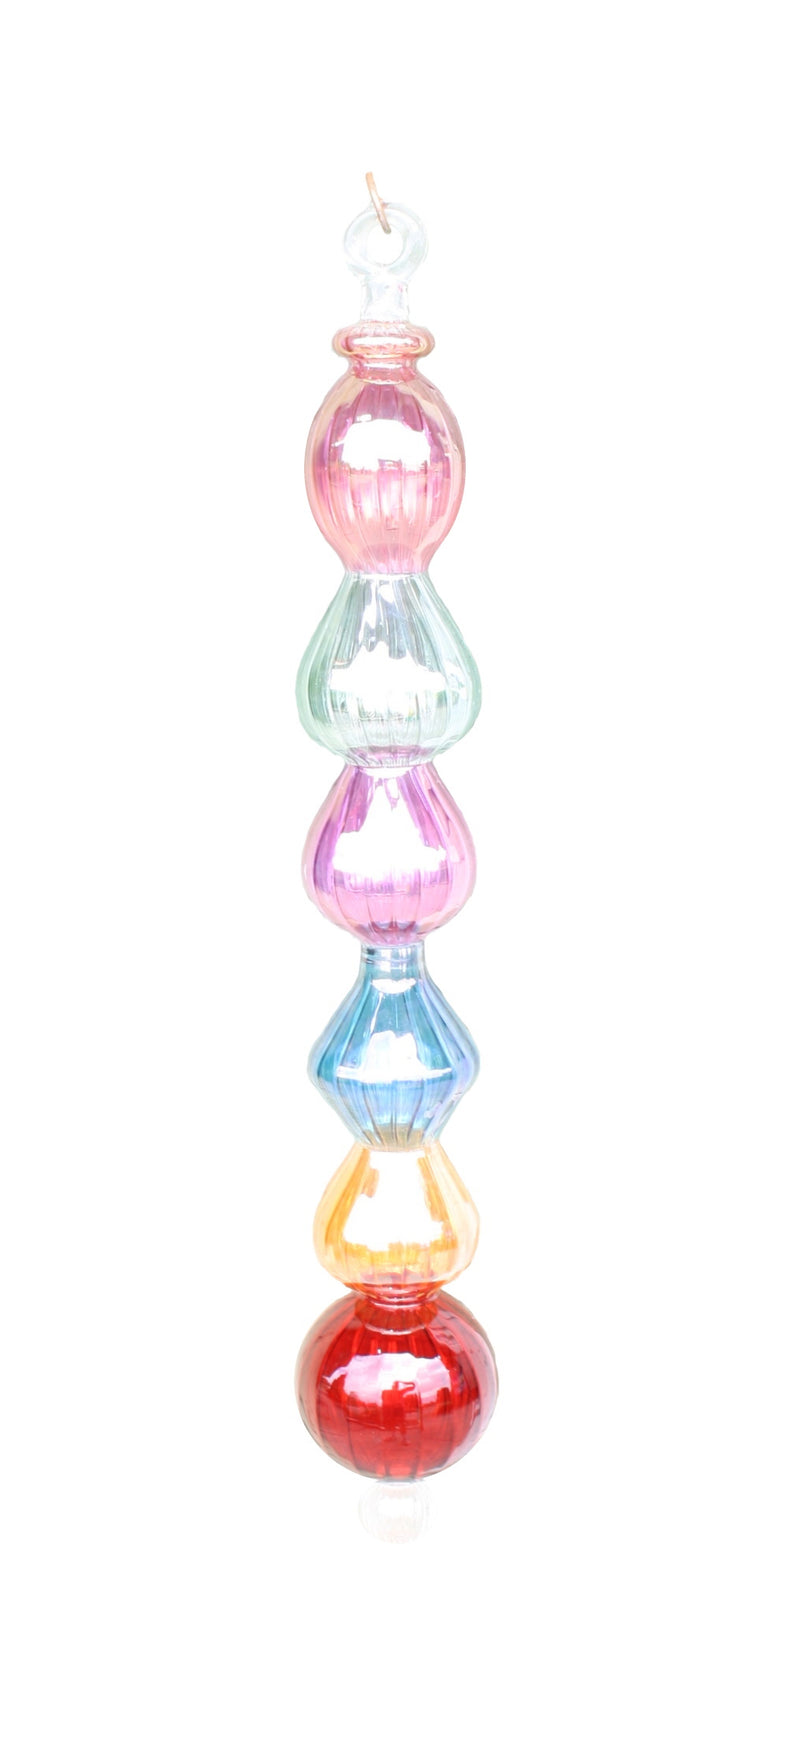 Jumbo (26 Inch) Multi Shape Blown Glass Ornament - Multi Color